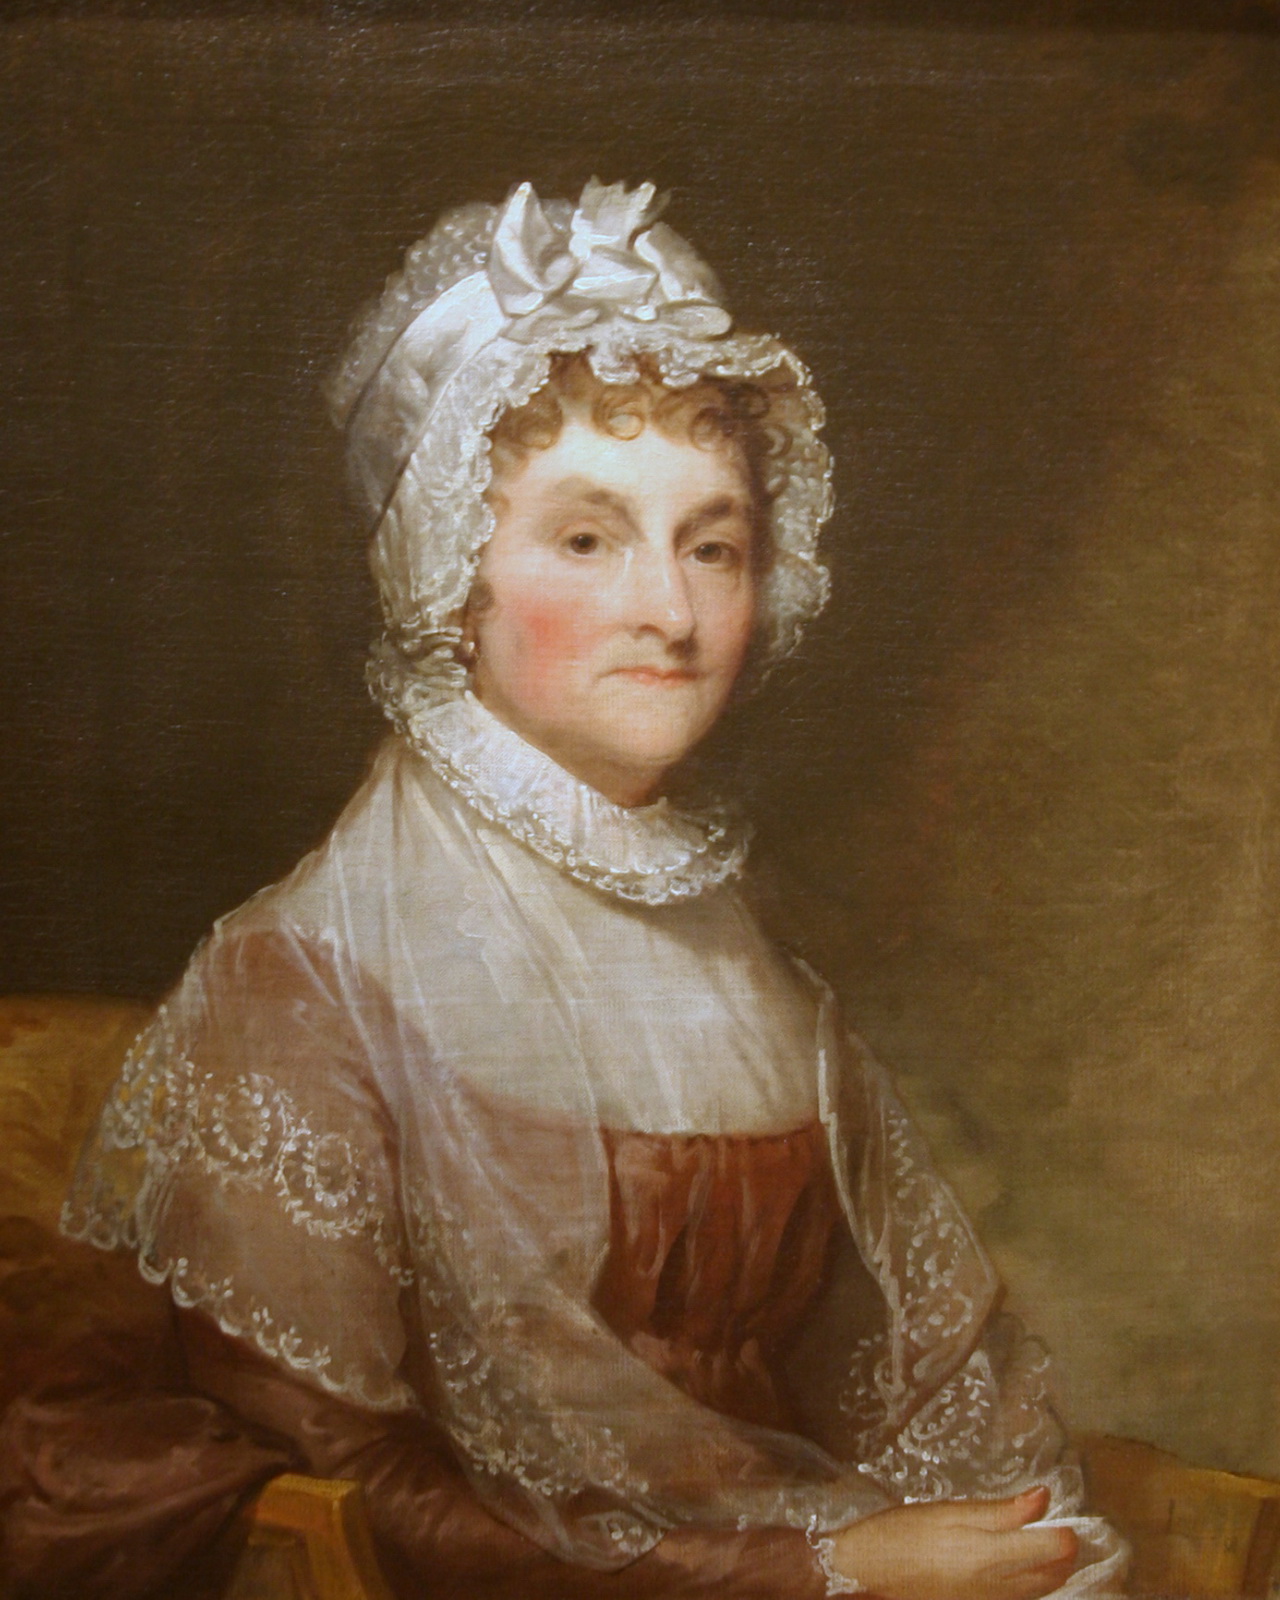 a portrait of a woman in a bonnet